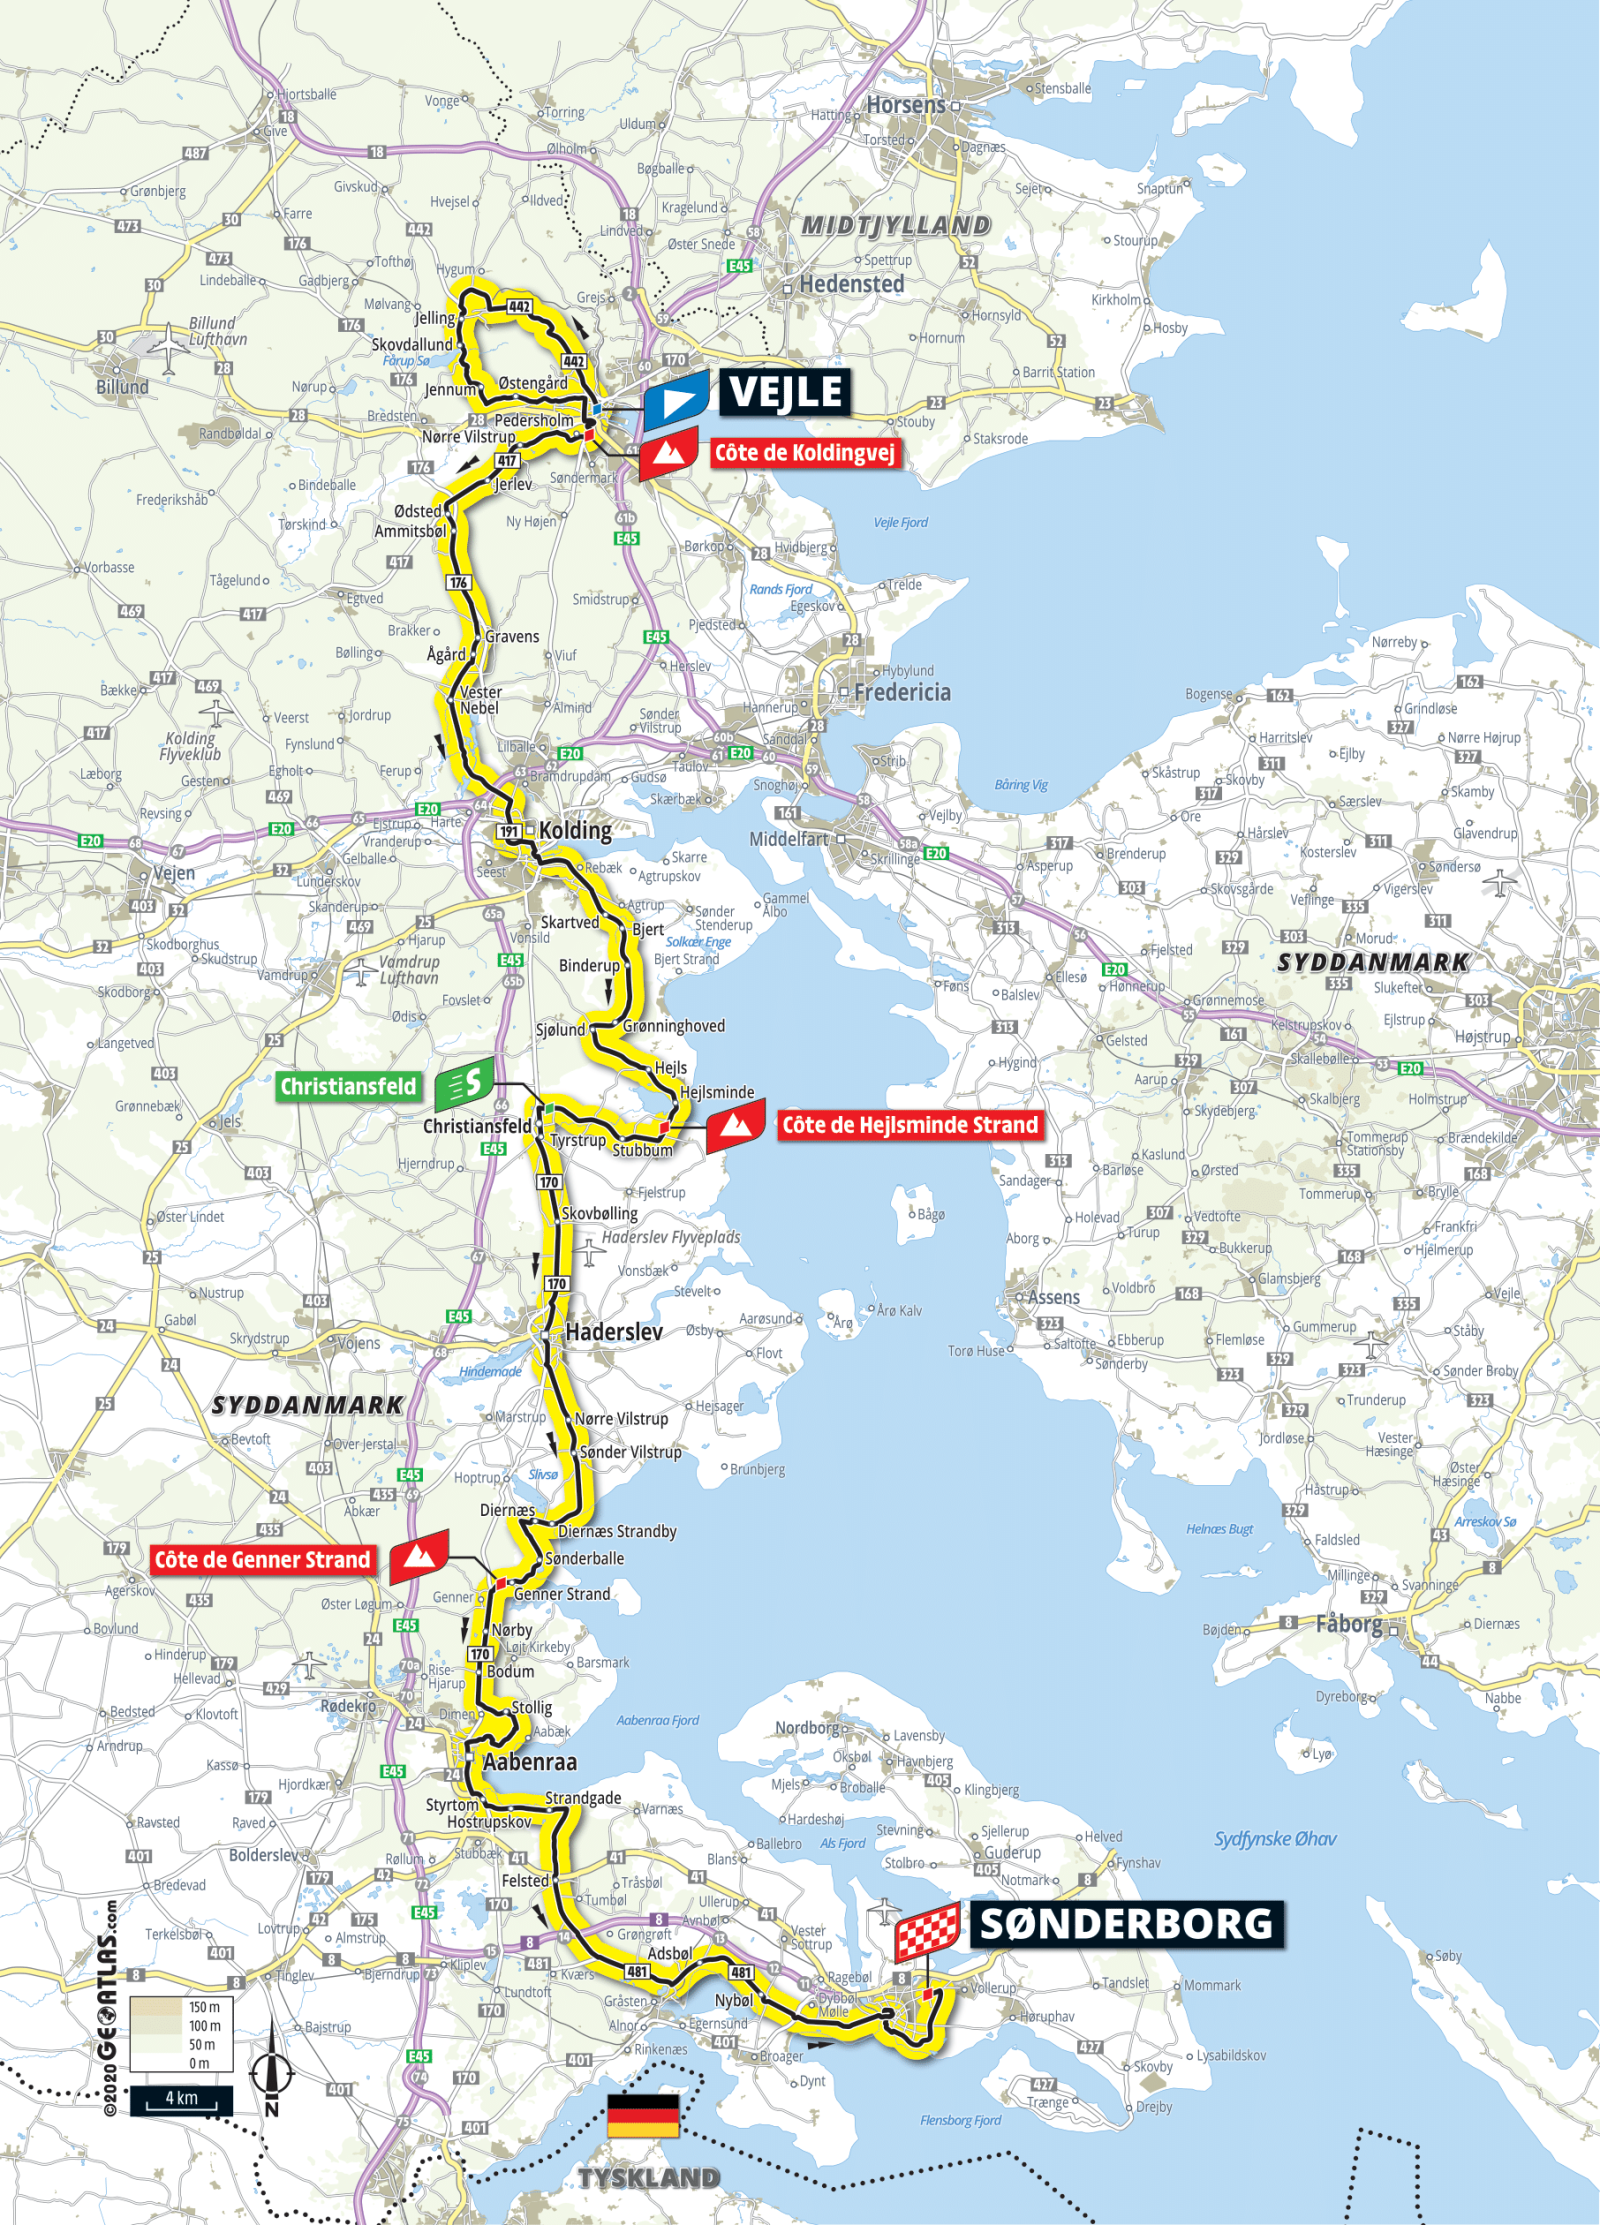 Stage 3 Tour de France 2022 route map